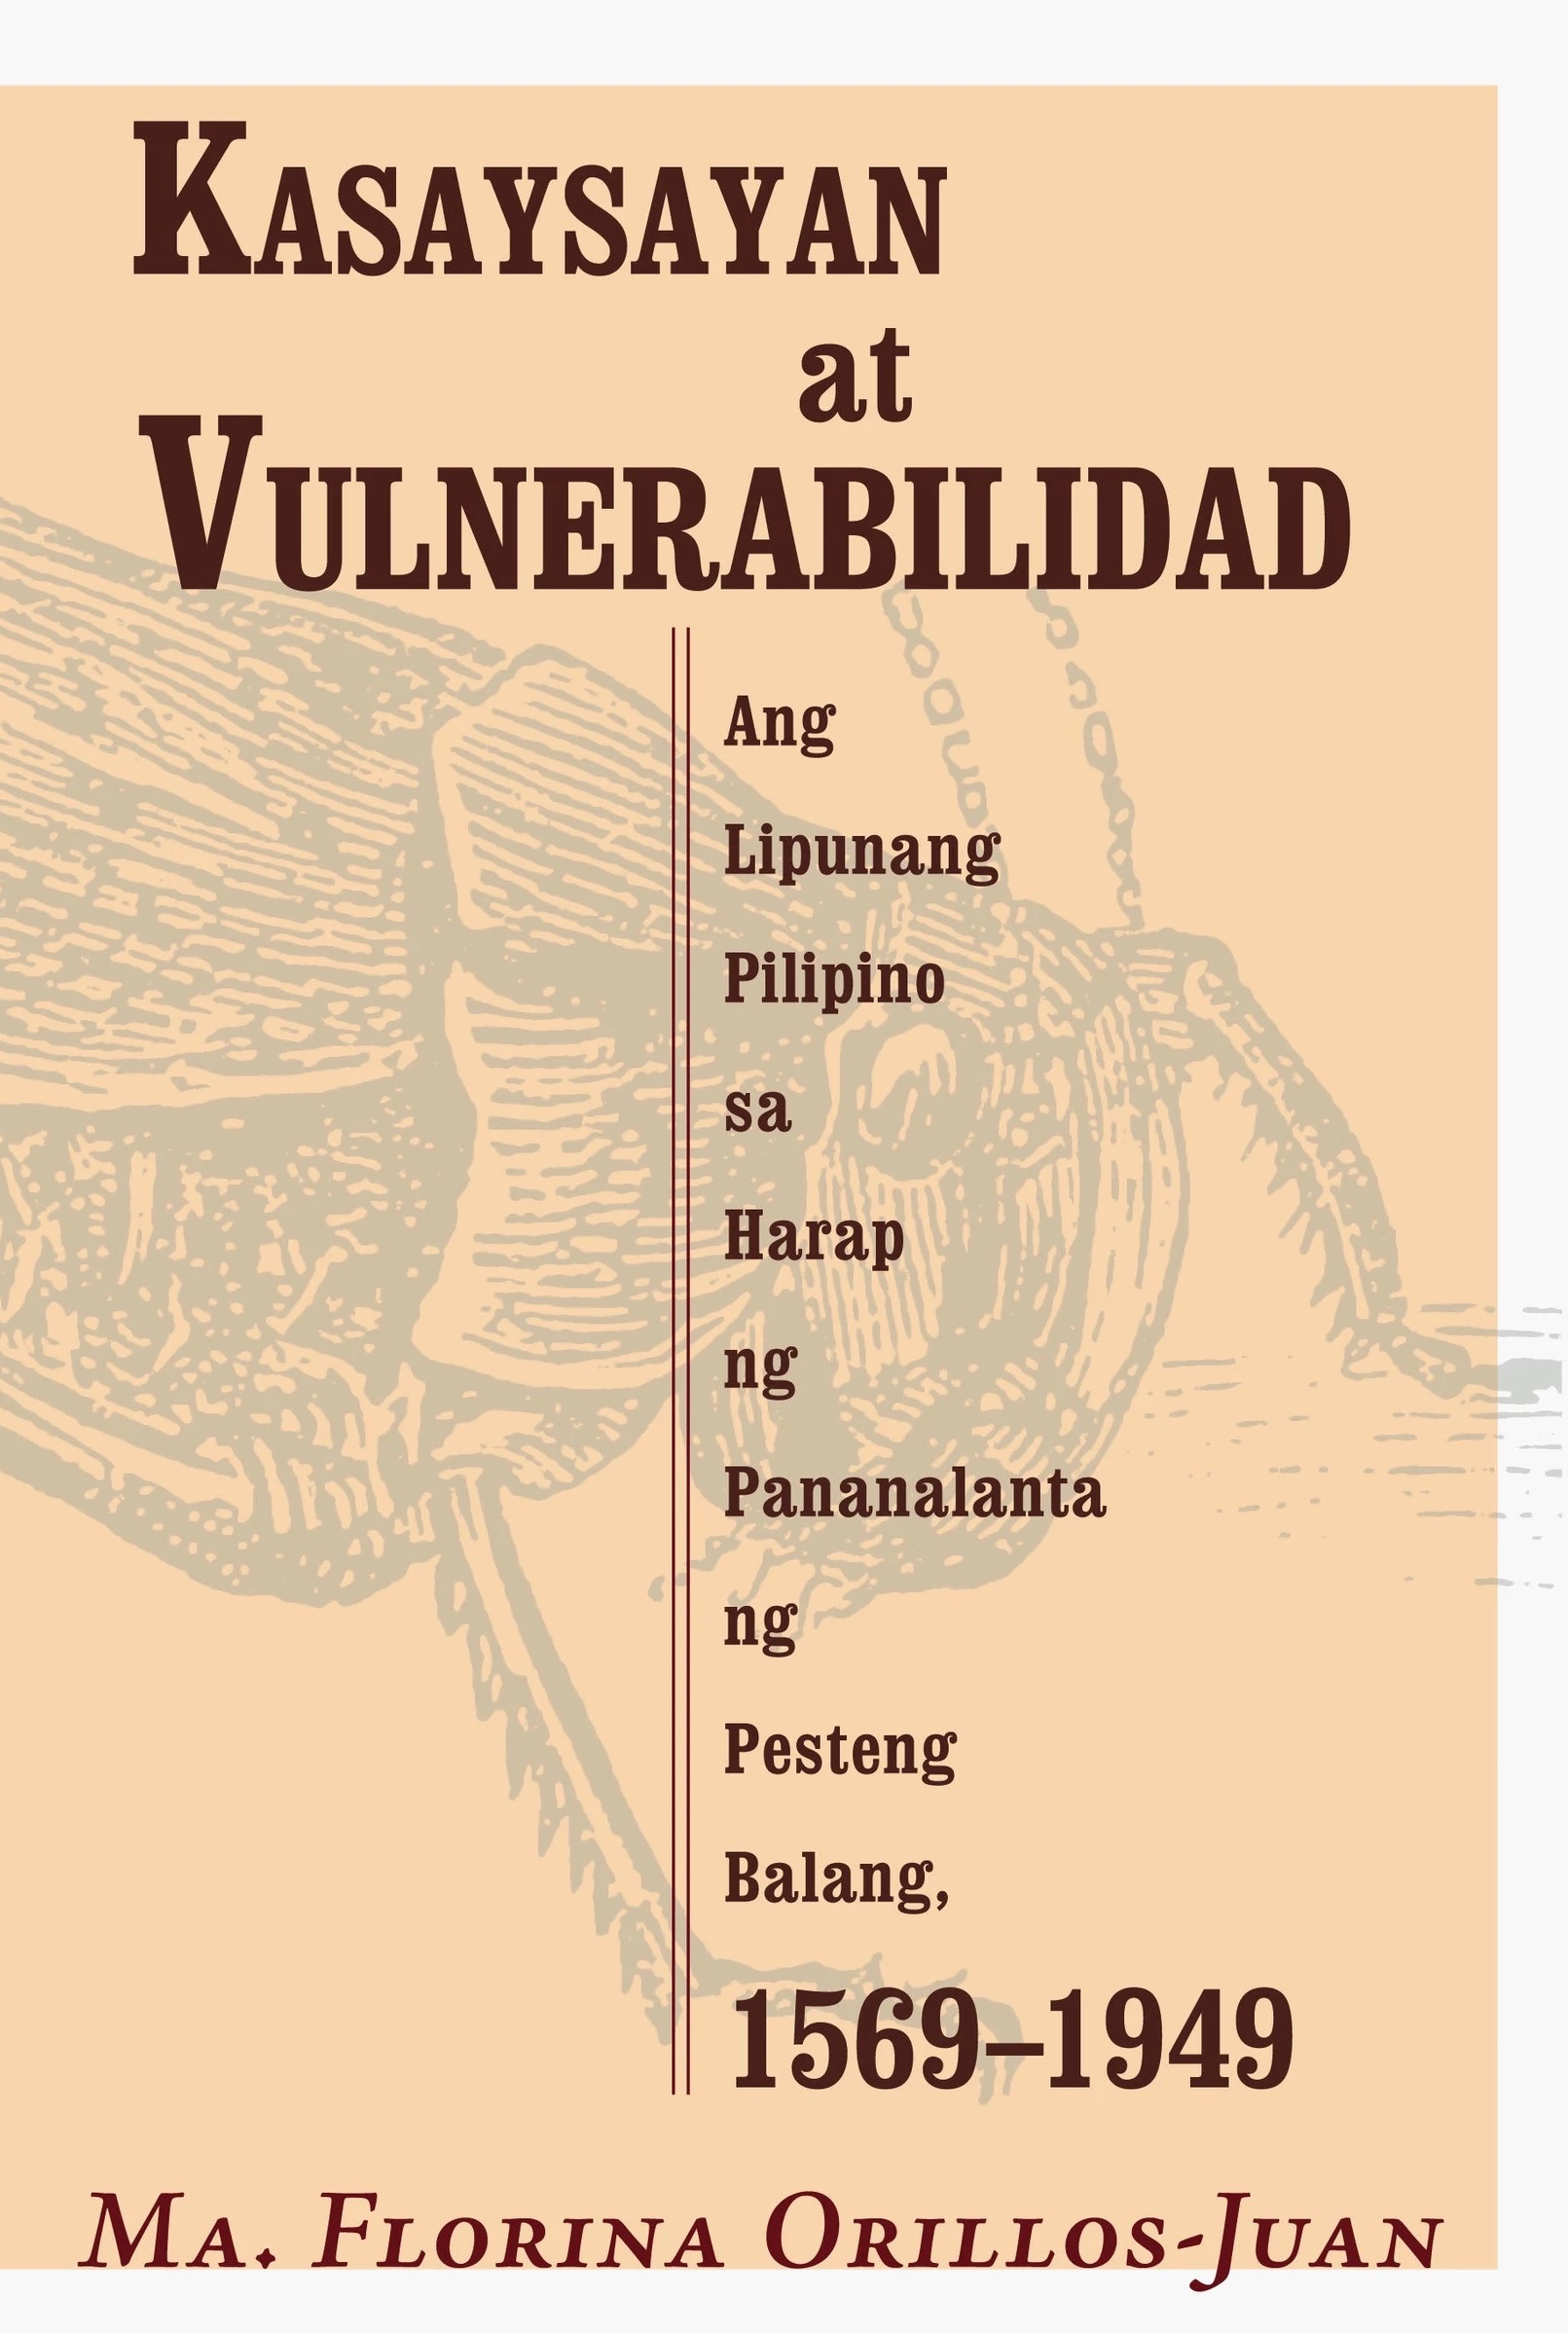 Kasaysayan at vulnerabilidad ang lipunang Pilipino sa harap ng pananalanta ng pesteng balang, 1569-1949